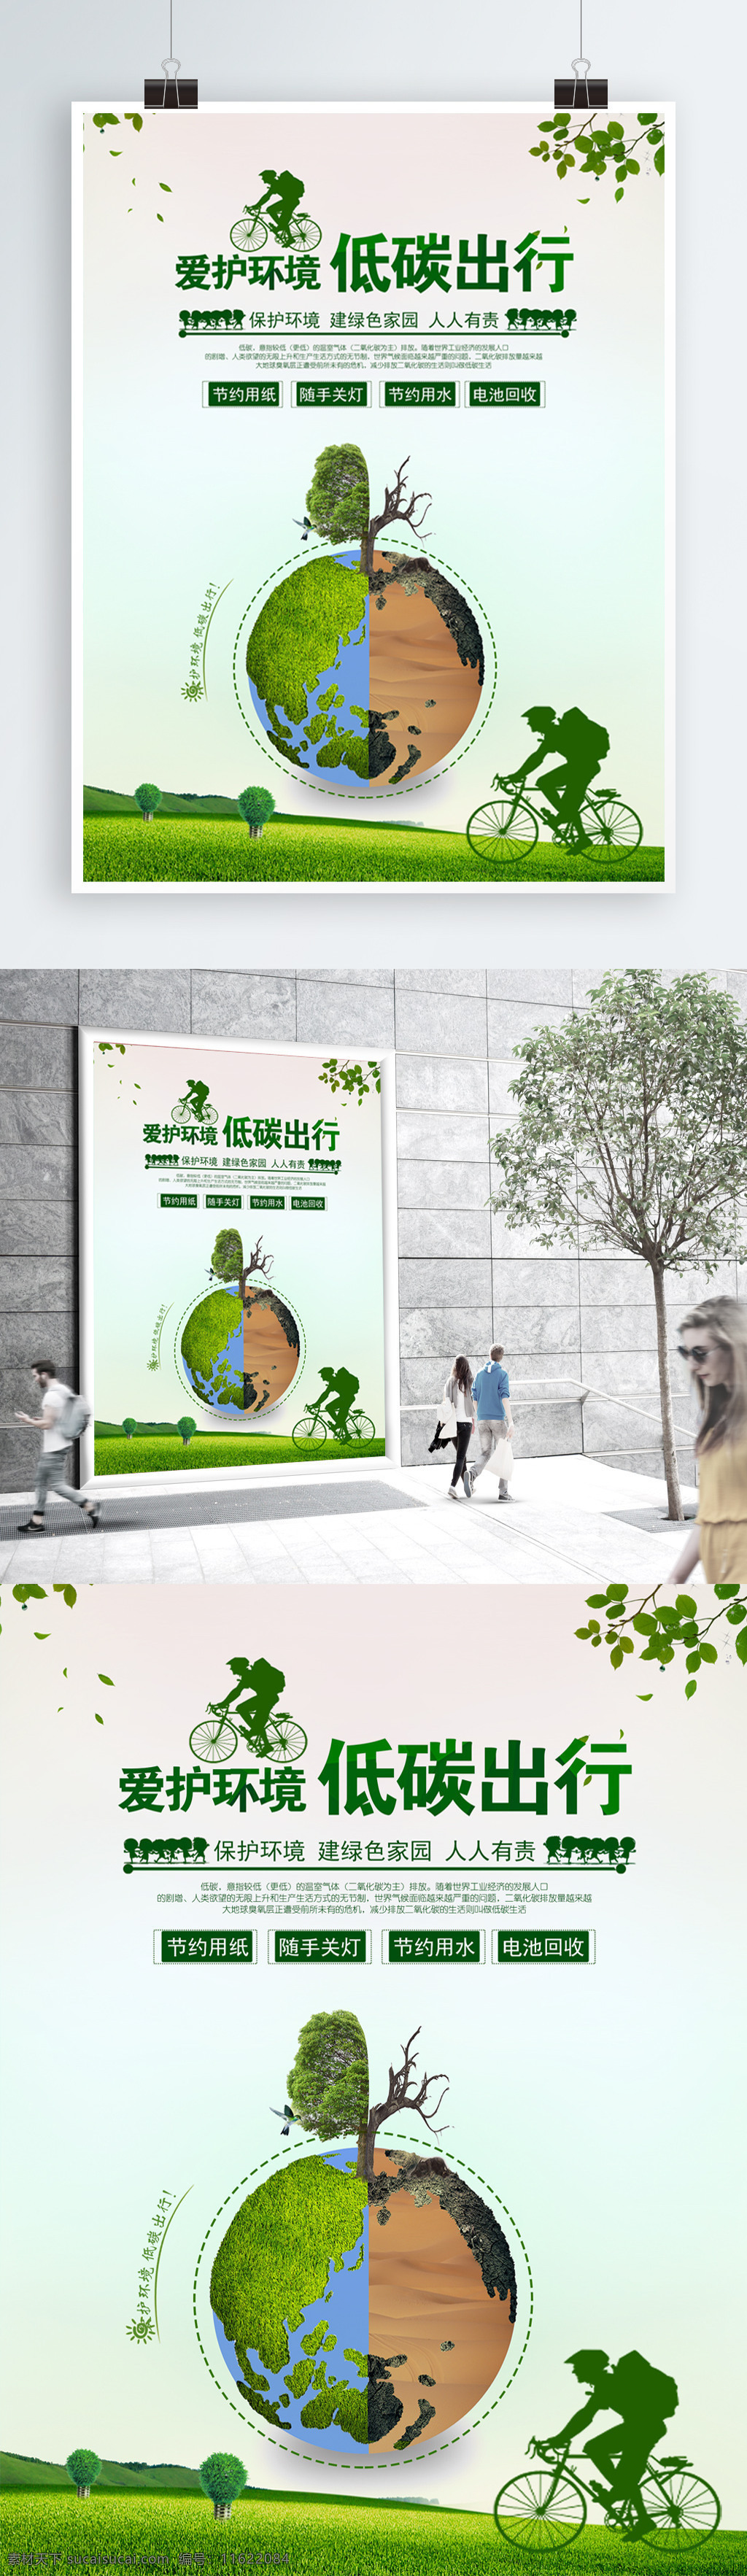 时尚 清新 绿色 爱护 环境 低 碳 出行 公益 宣传海报 低碳 爱护环境 保护环境 低碳海报 低碳宣传 爱护环境海报 保护 低碳素材 低碳生活